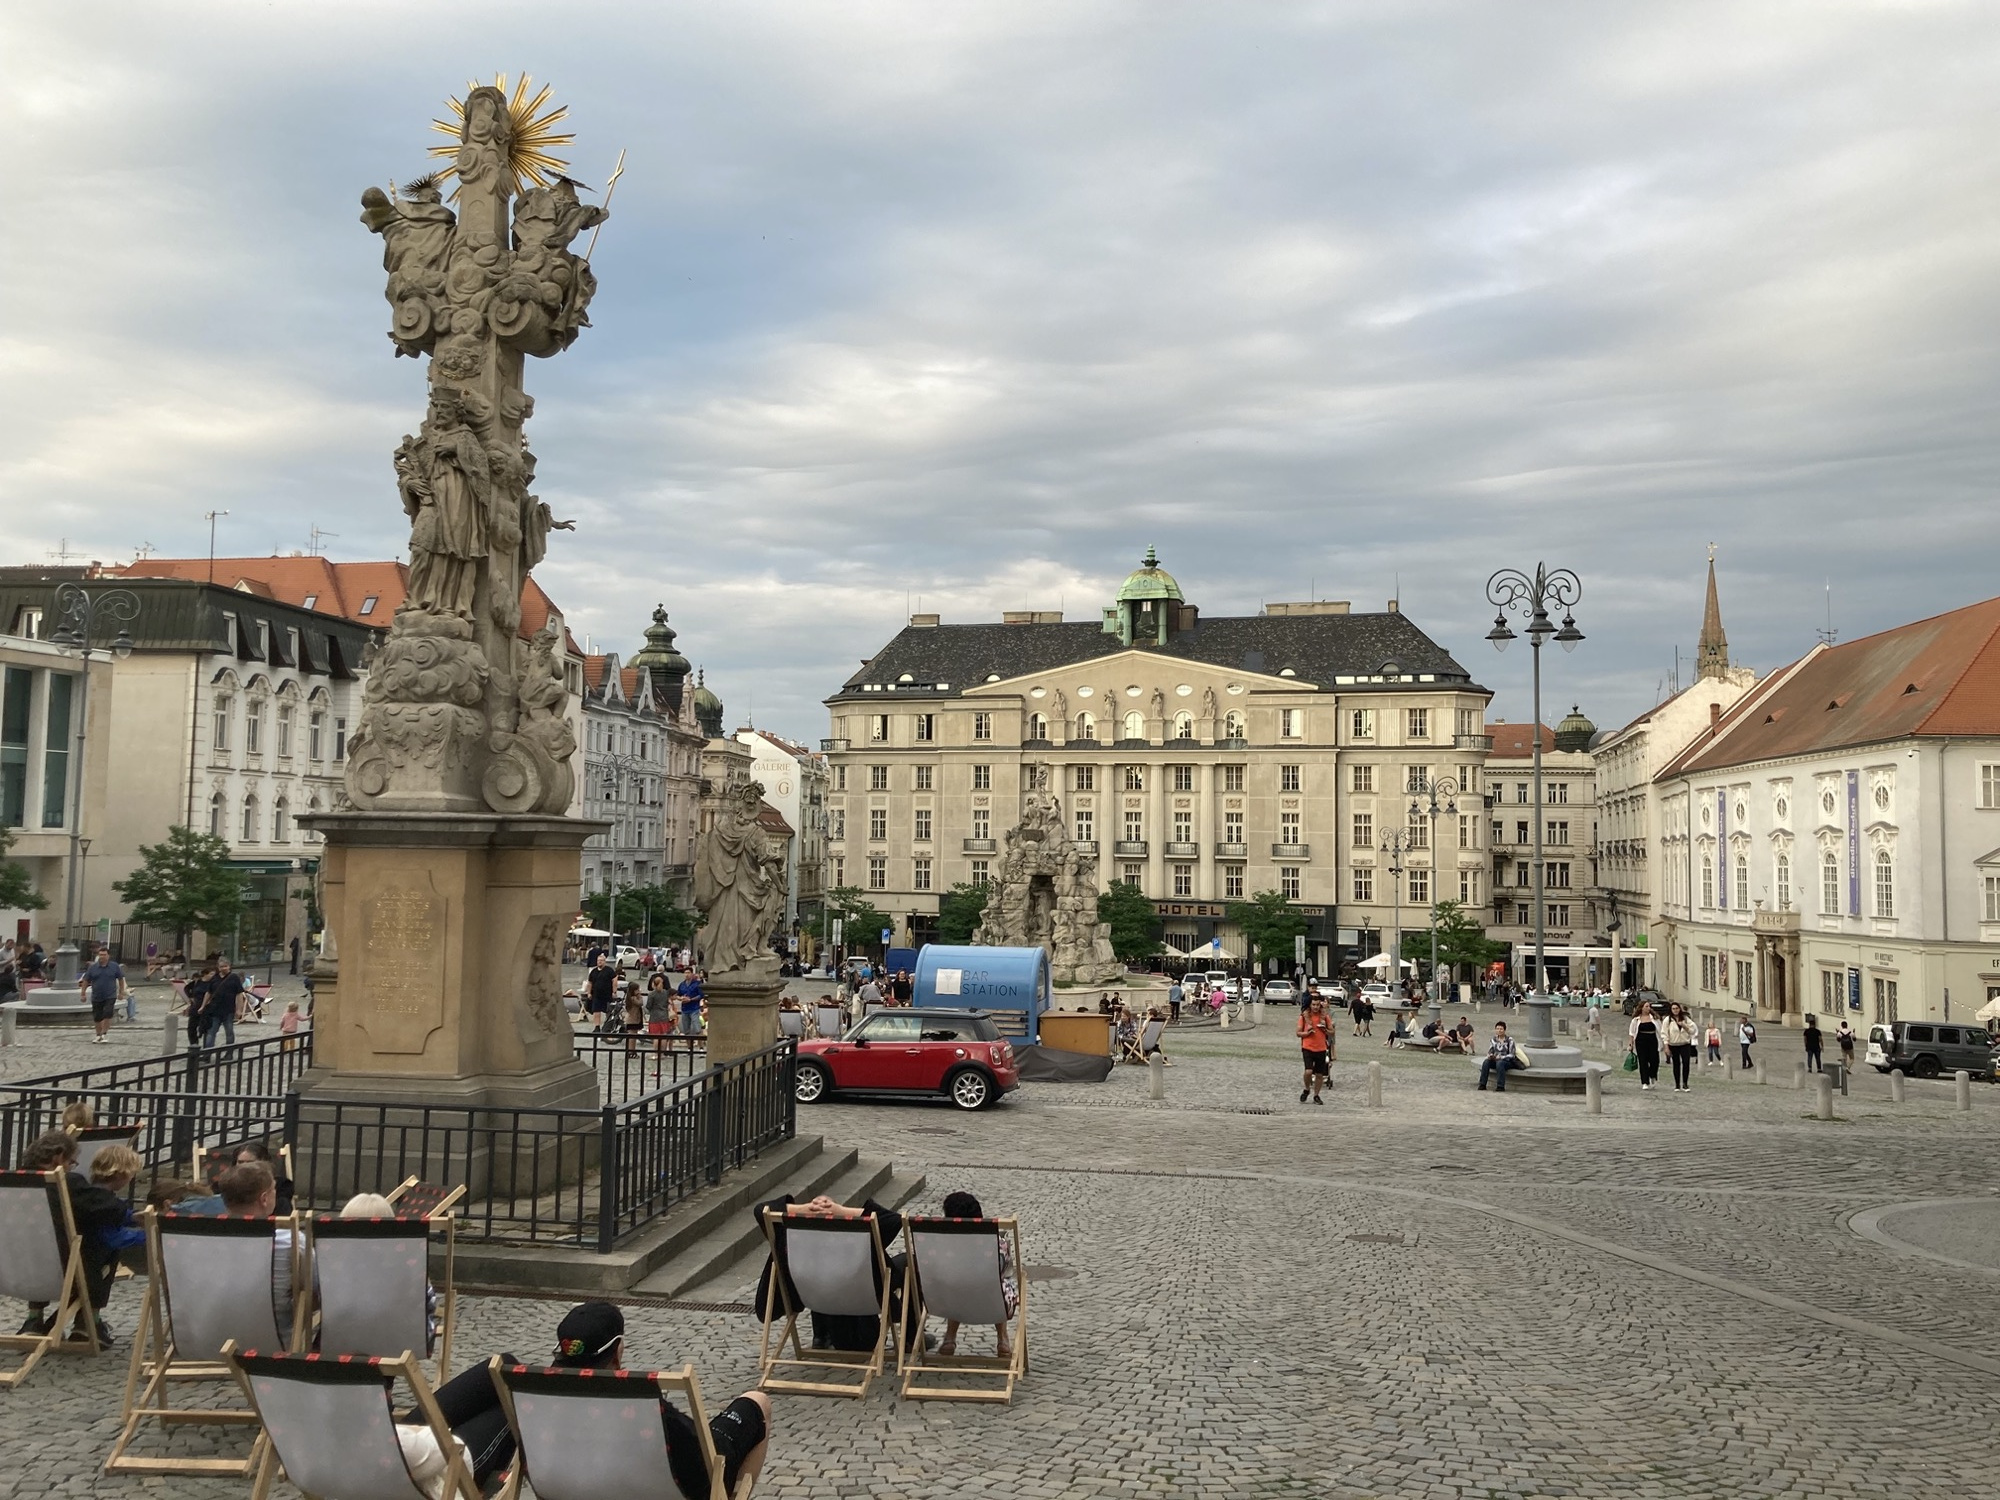 zentraler Marktplatz in Brno, im Vordergrund Liegestühle vor einer Pestsäule, dahinter ein weiter Platz, der von einem altmodischen Hotel begrenzt wird